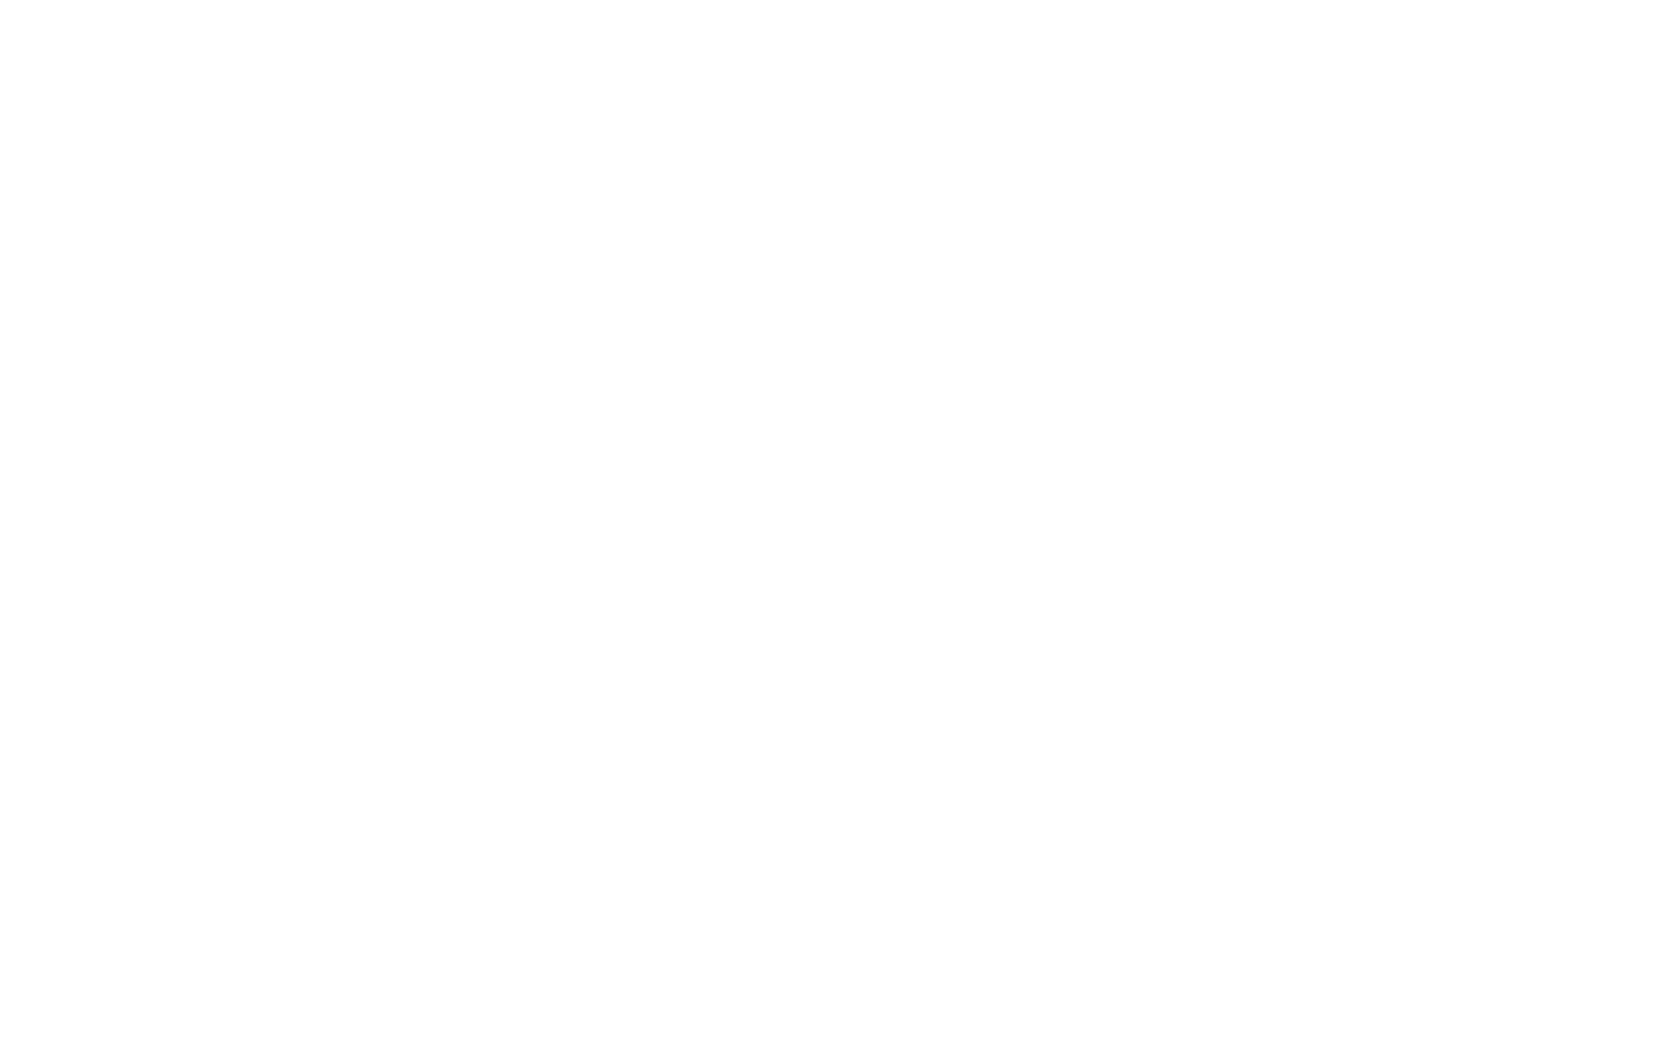 проект иконостаса, иконостас рисунок, ручная графика, иконостас храма в честь святителя Спиридона Тримифунтского в г. Минске